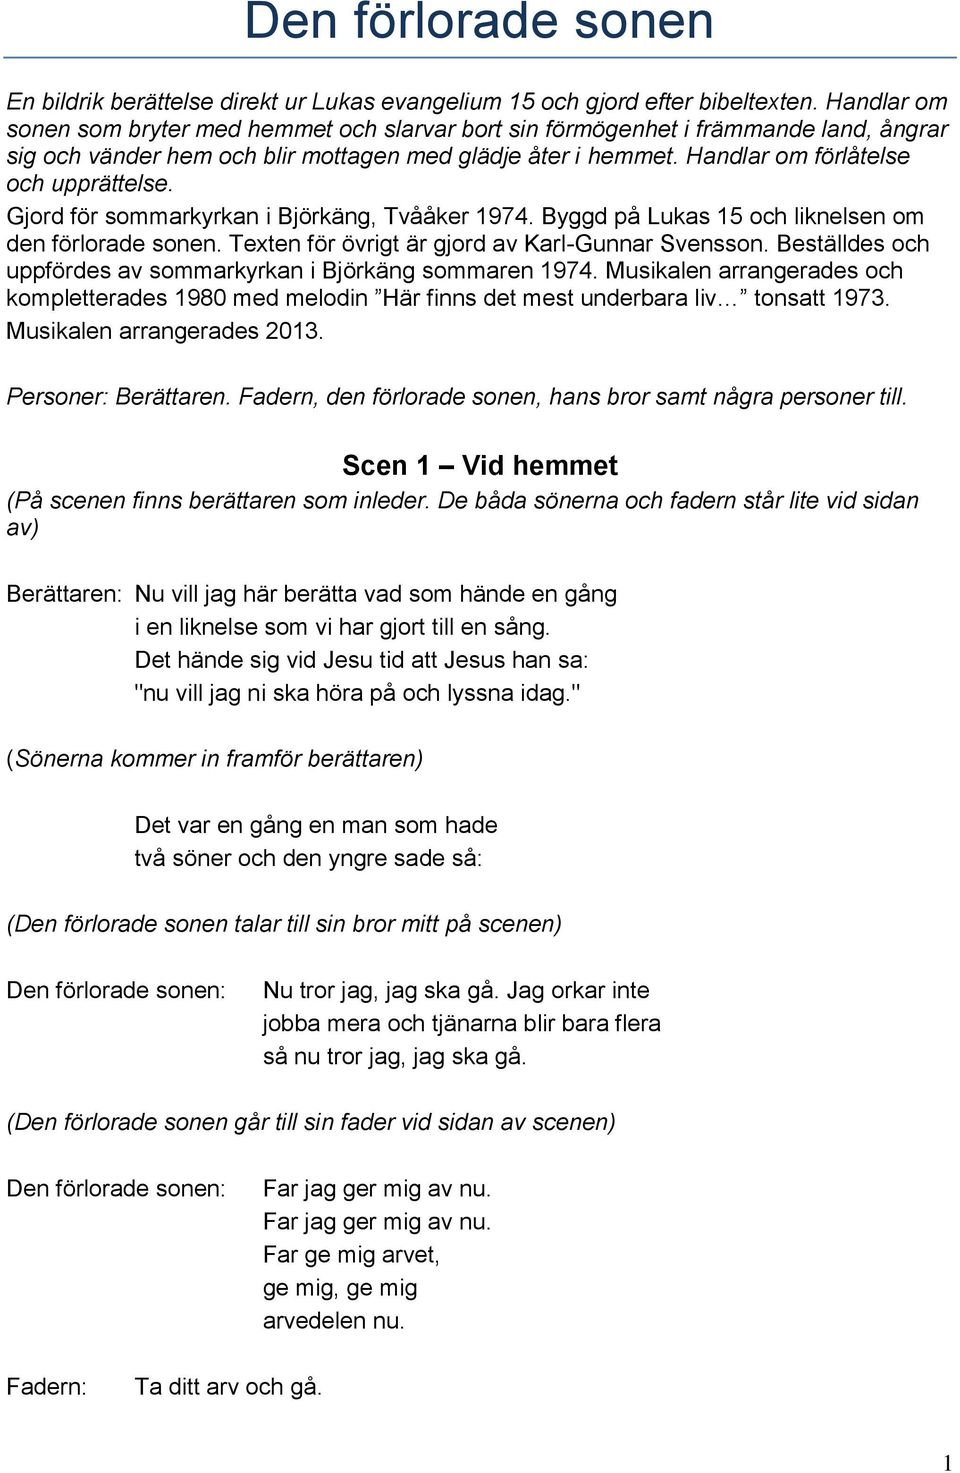 Gjord för sommarkyrkan i Björkäng, Tvååker 1974. Byggd på Lukas 15 och liknelsen om den förlorade sonen. Texten för övrigt är gjord av Karl-Gunnar Svensson.